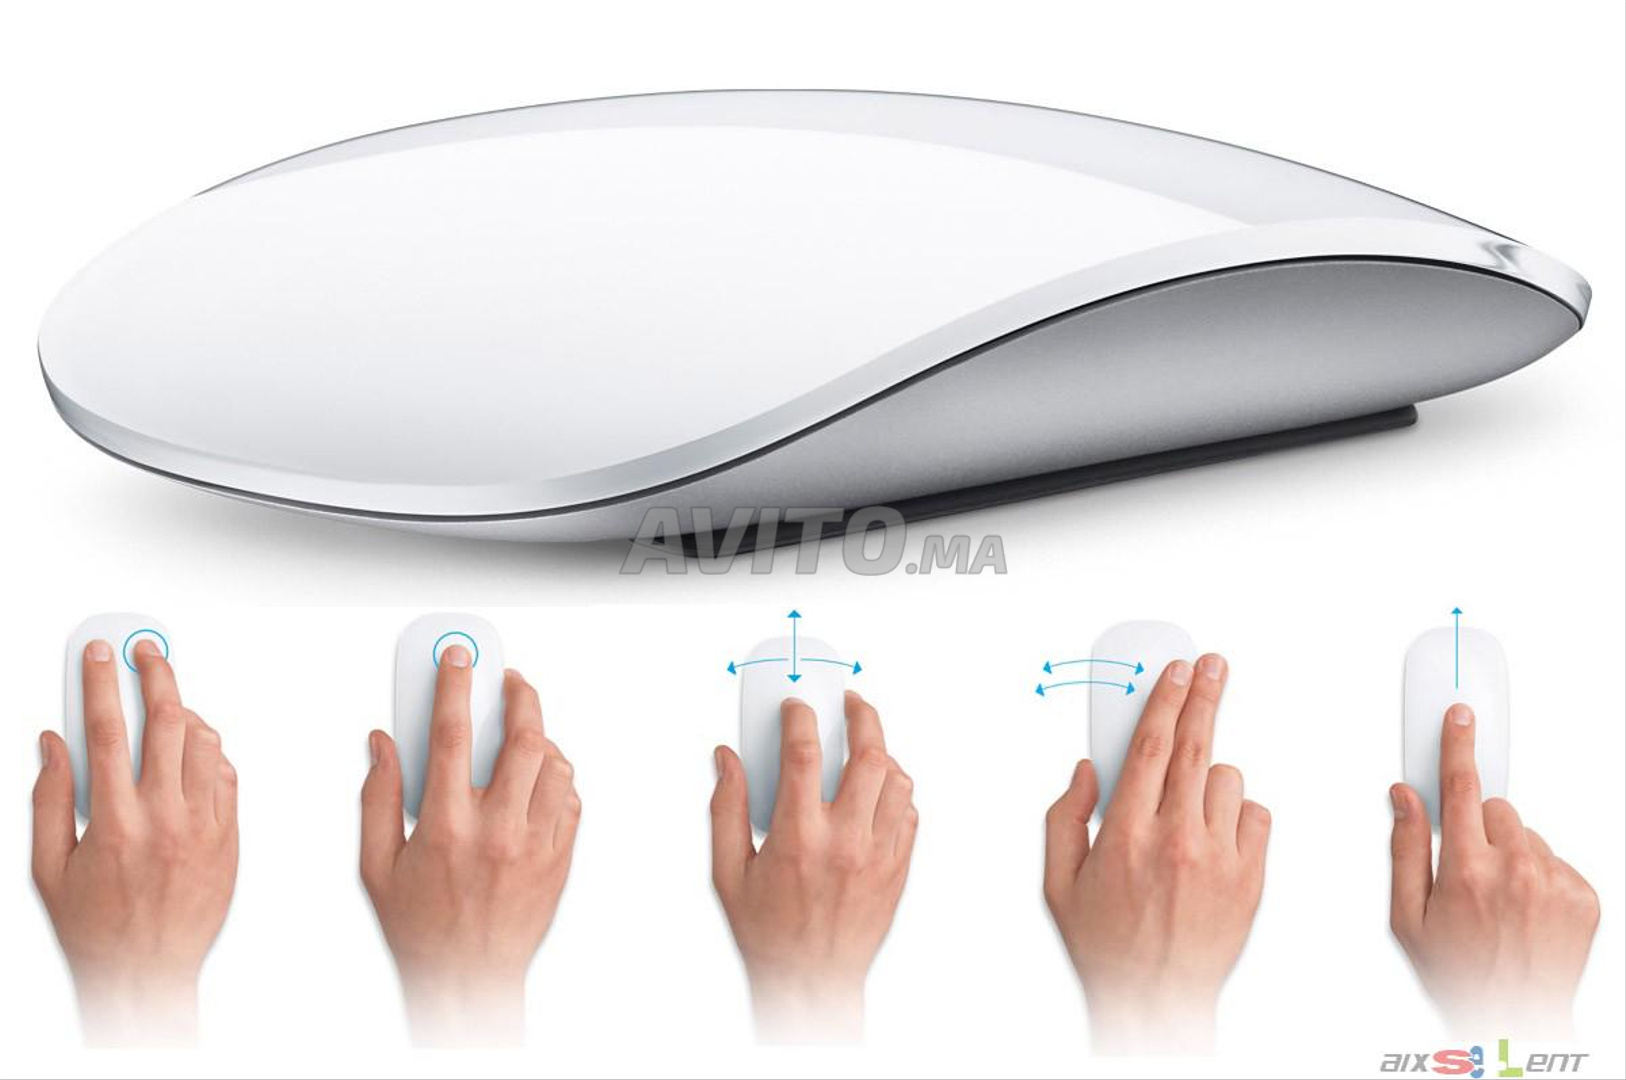 Achat de Souris Magic Mouse 2 Apple Lightning - Neuf d'occasion et neuf,  A1657